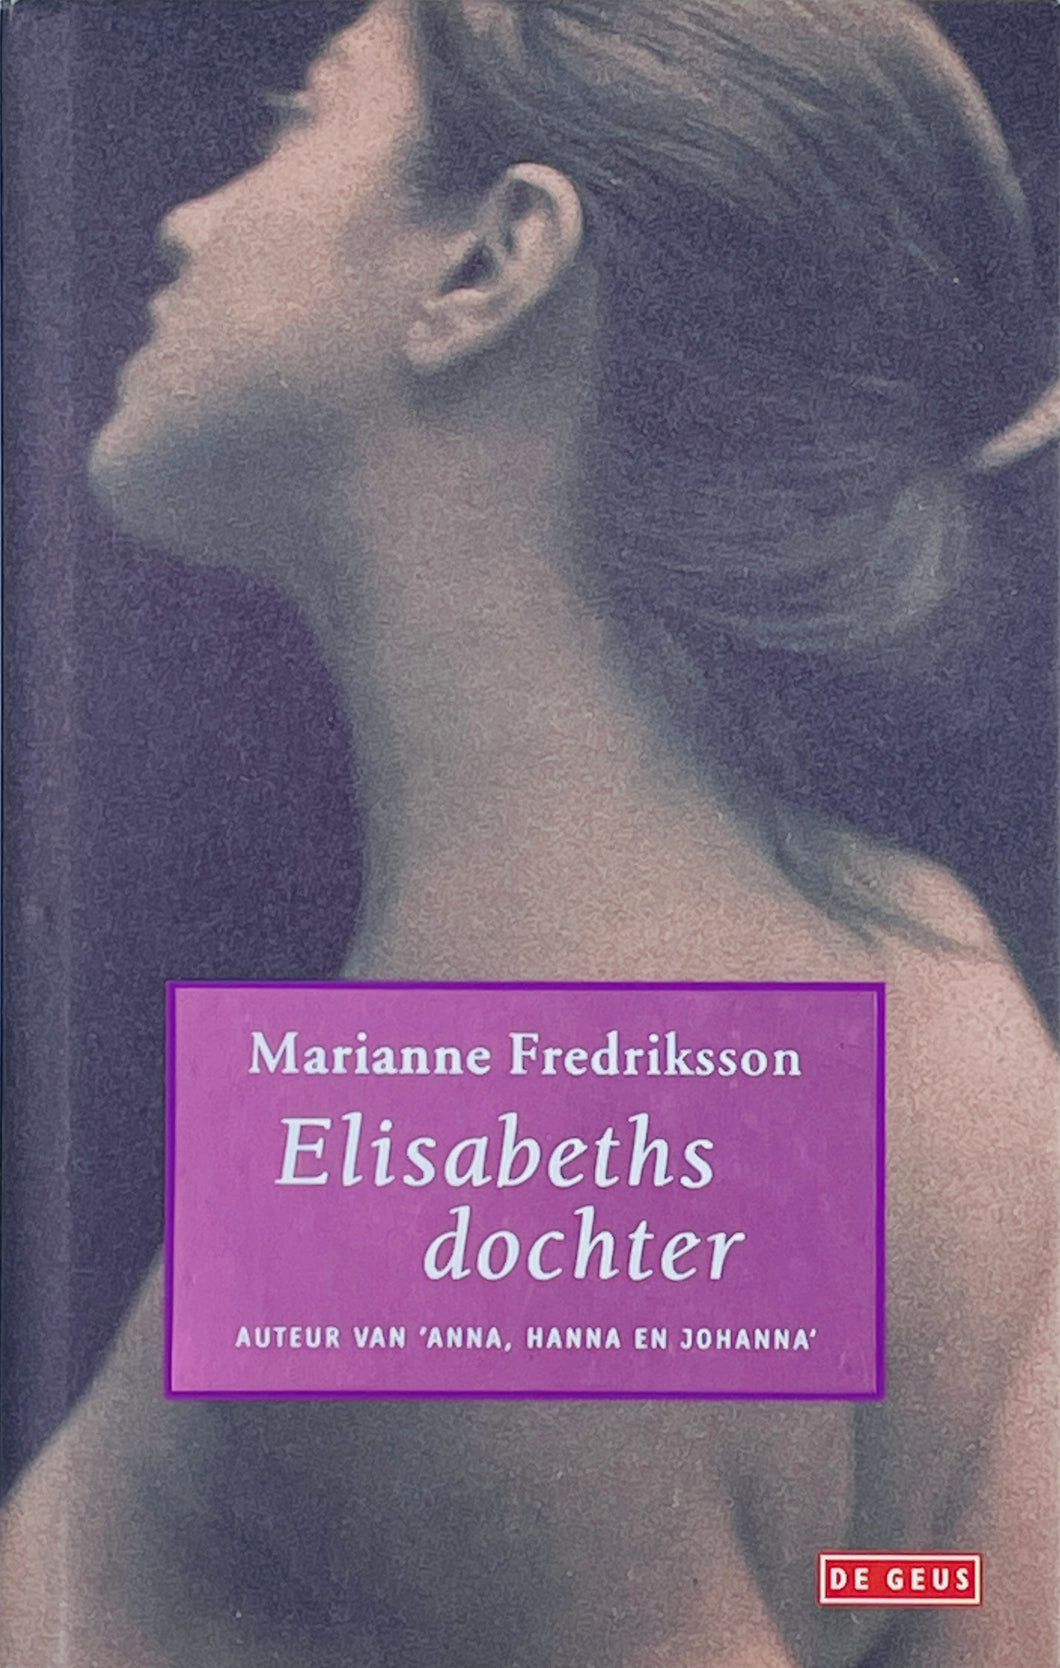 Fredriksson Marianne - Elisabeths dochter